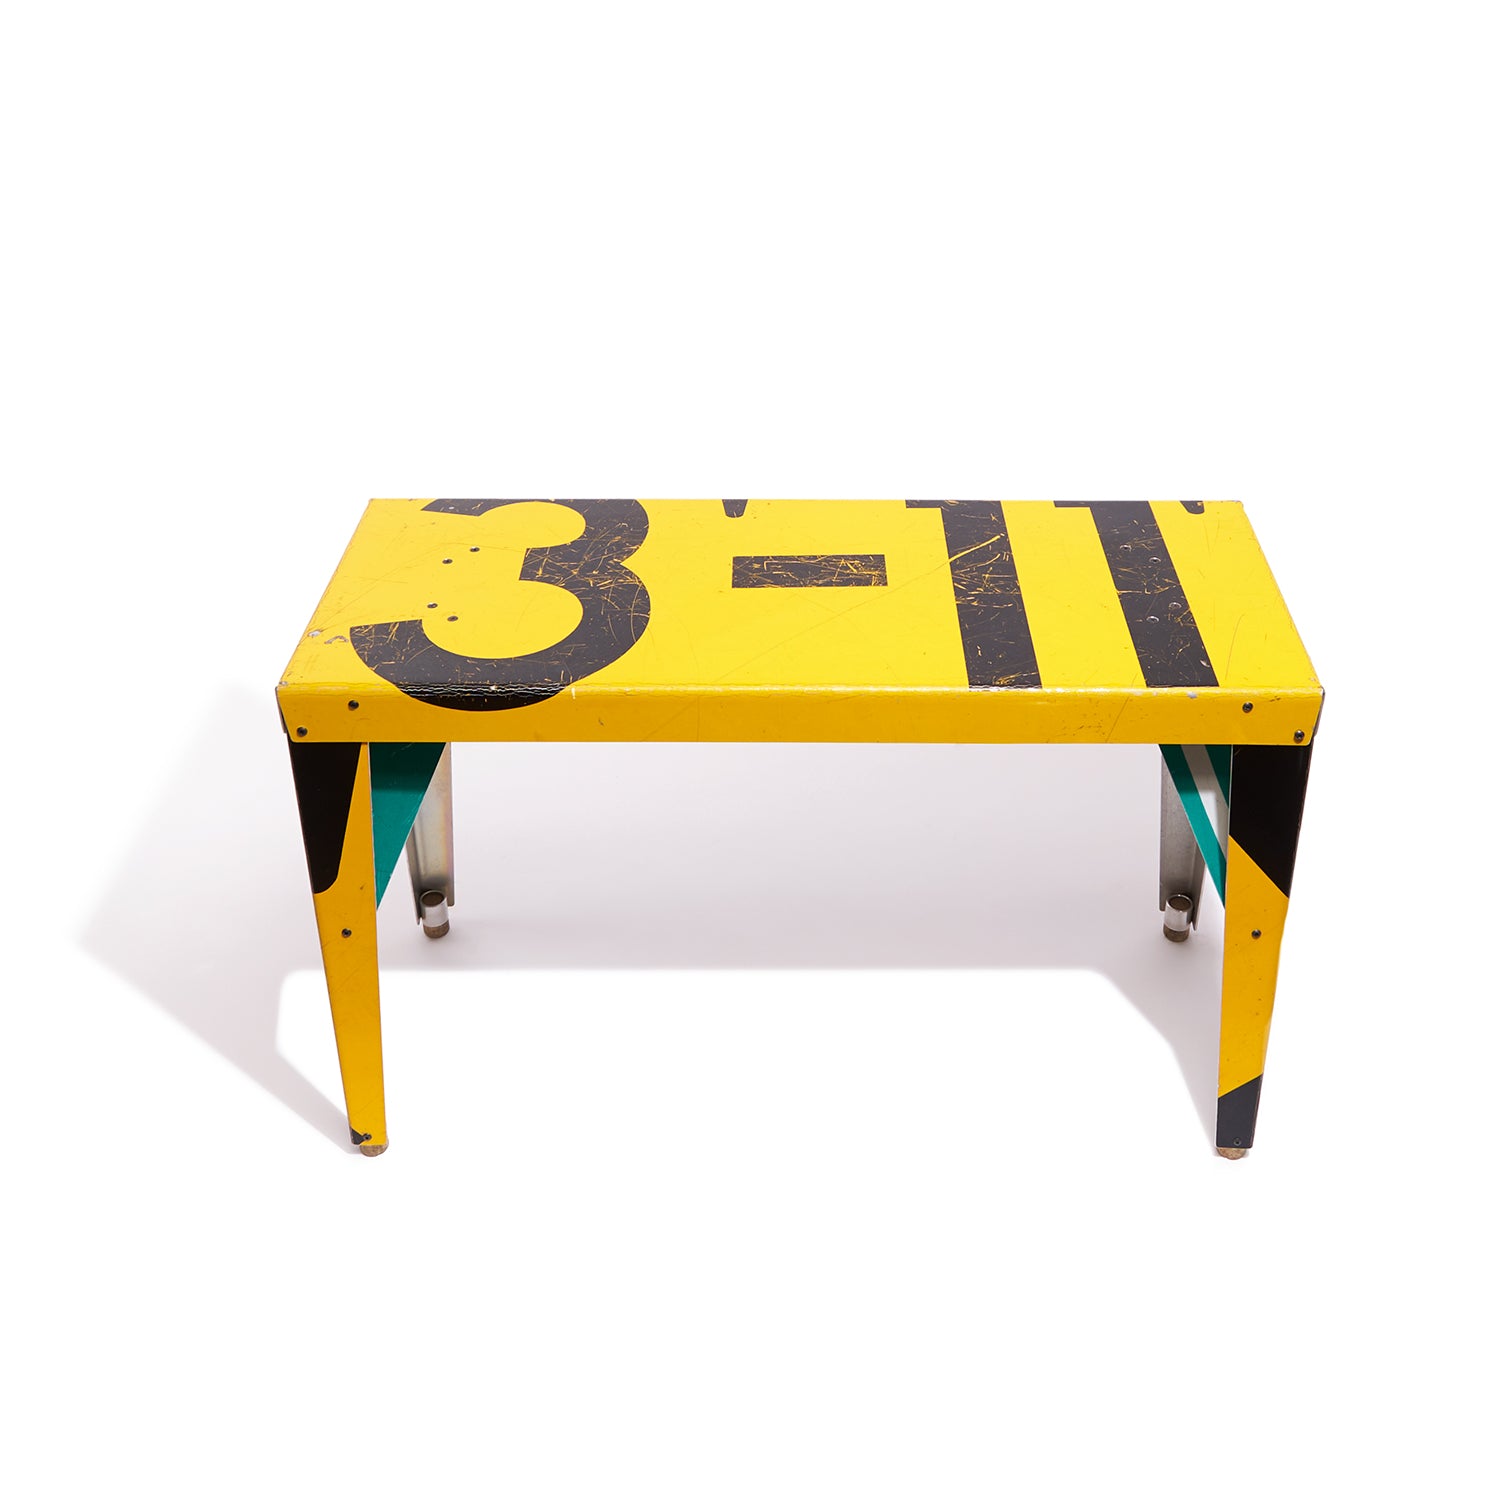 Yellow 3-11 Transit Table